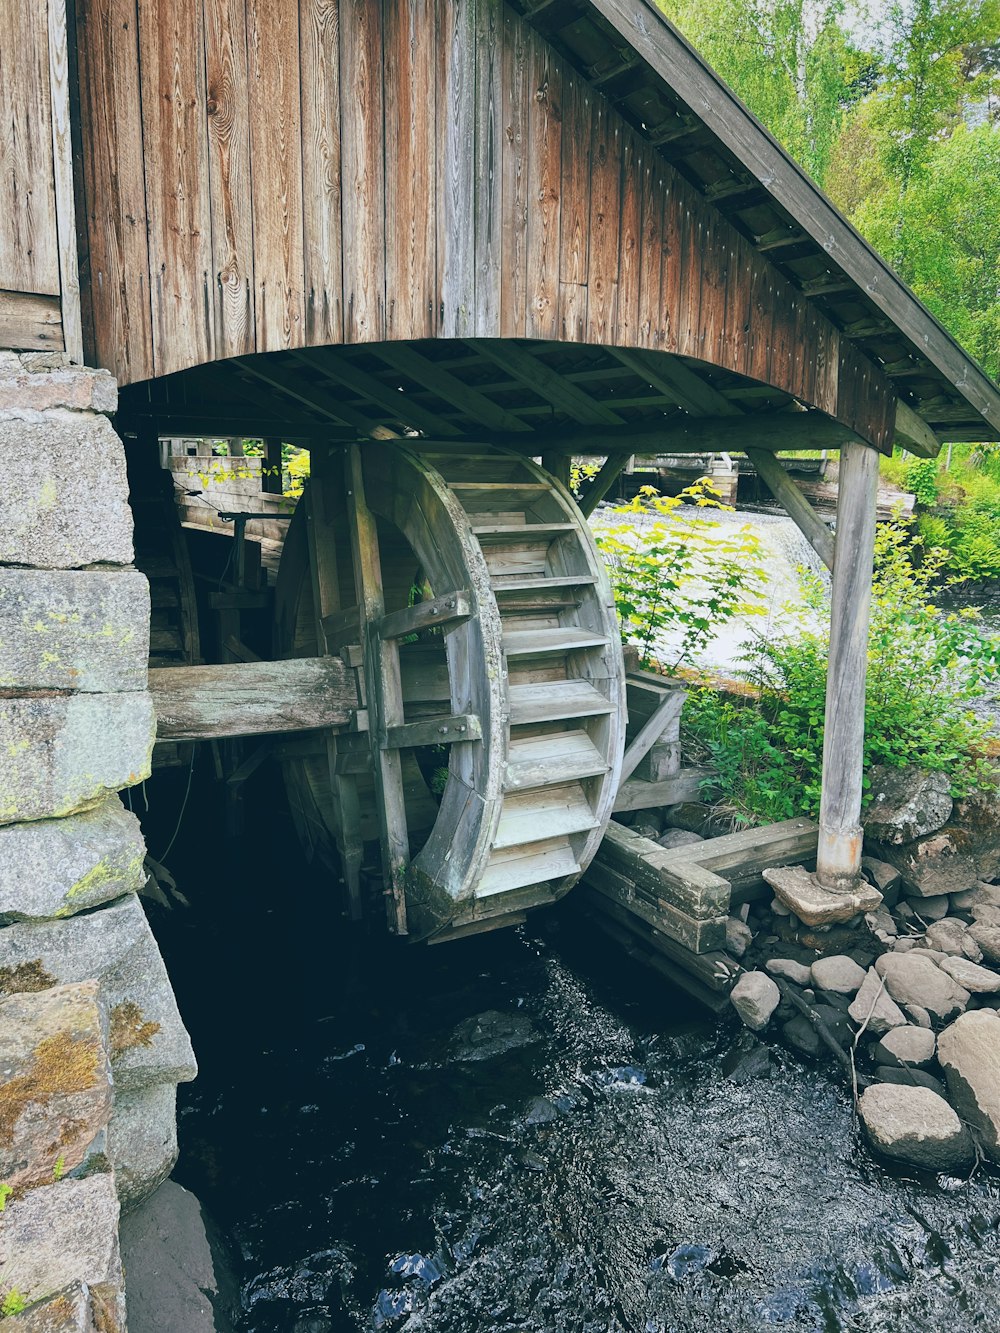 a wooden bridge over a stream